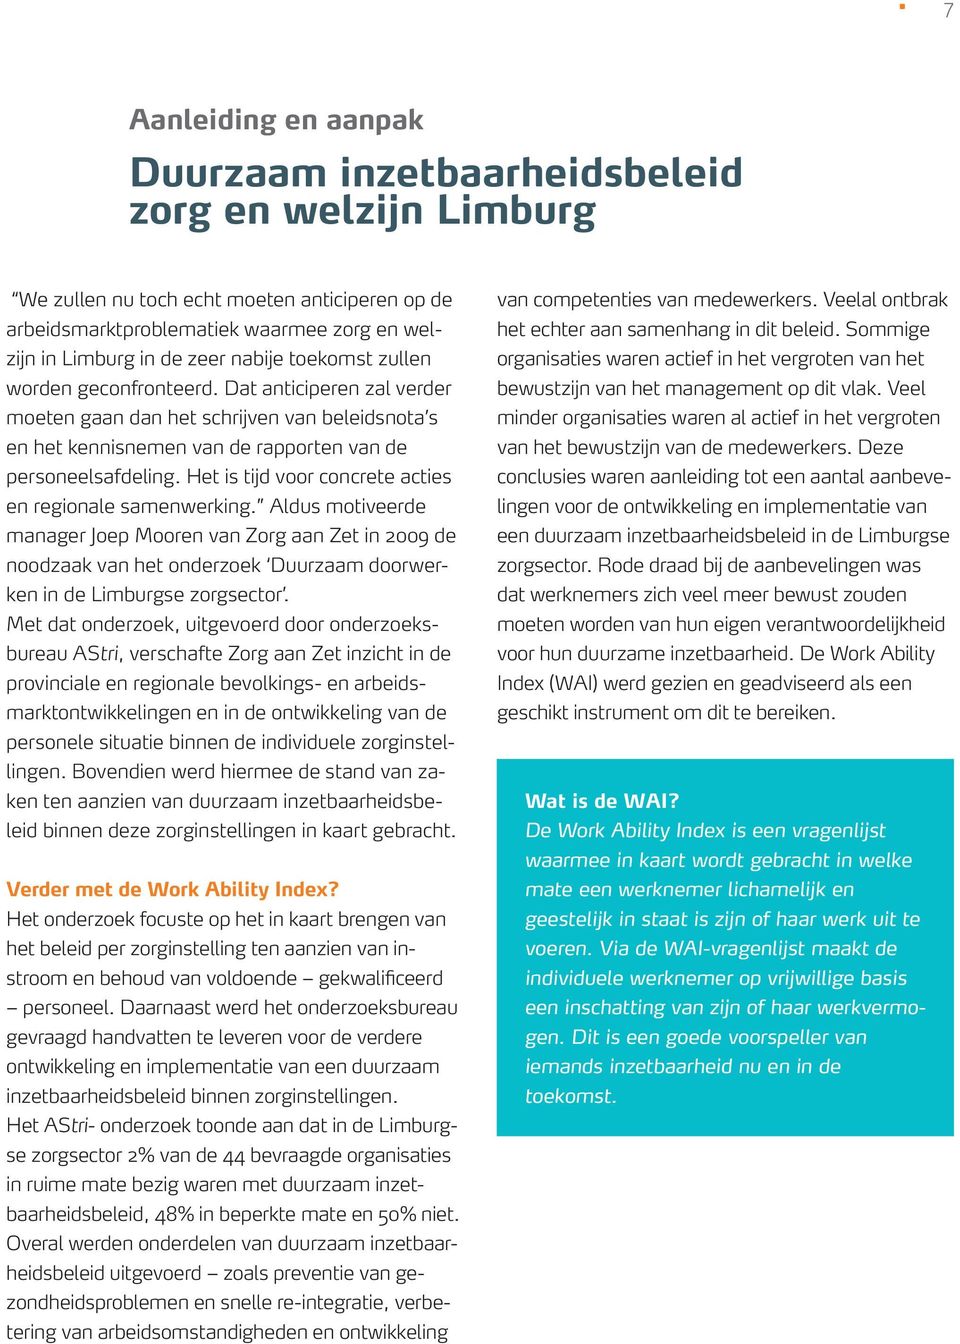 Het is tijd voor concrete acties en regionale samenwerking. Aldus motiveerde manager Joep Mooren van Zorg aan Zet in 2009 de noodzaak van het onderzoek Duurzaam doorwerken in de Limburgse zorgsector.